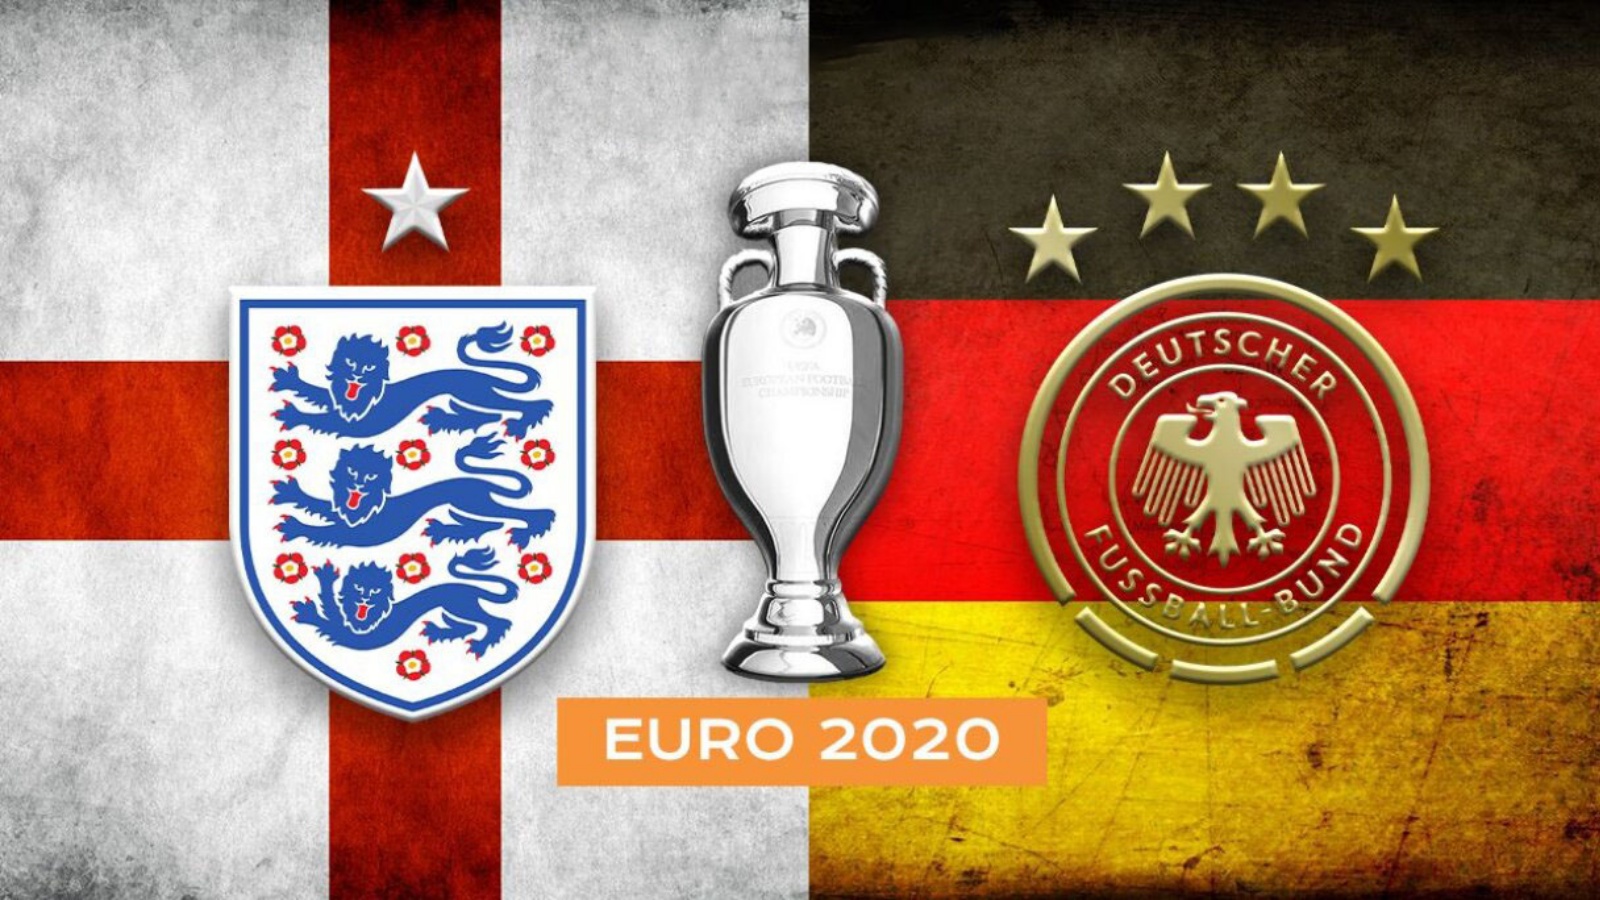 ENGLAND - TYSKLAND PRO TV LIVE EURO 2020